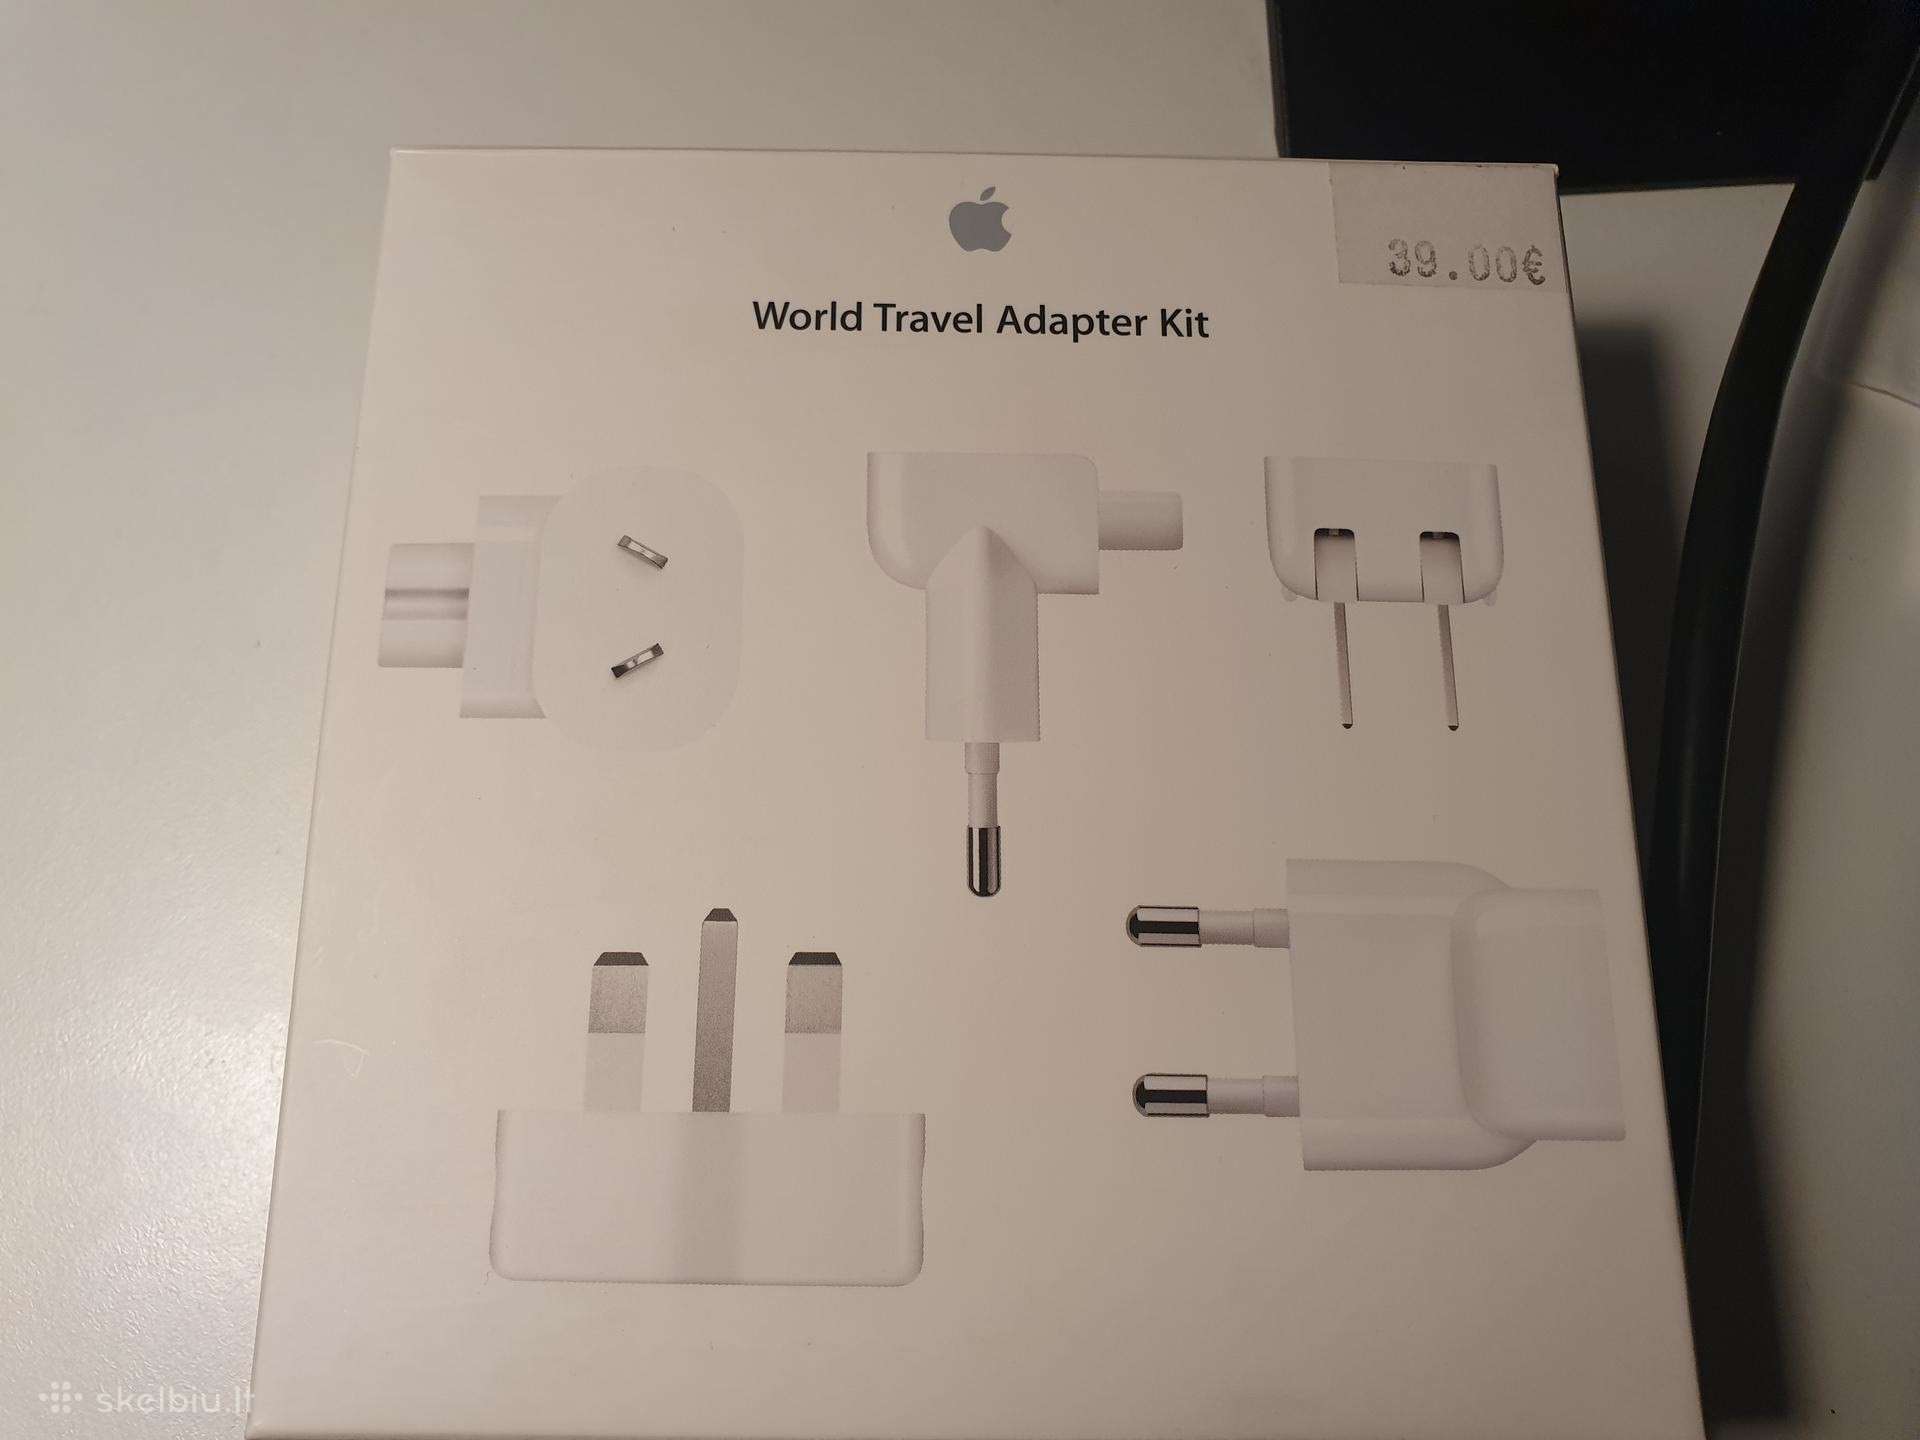 Apple Travel Adapter Kit Adapteriai Skelbiu Lt